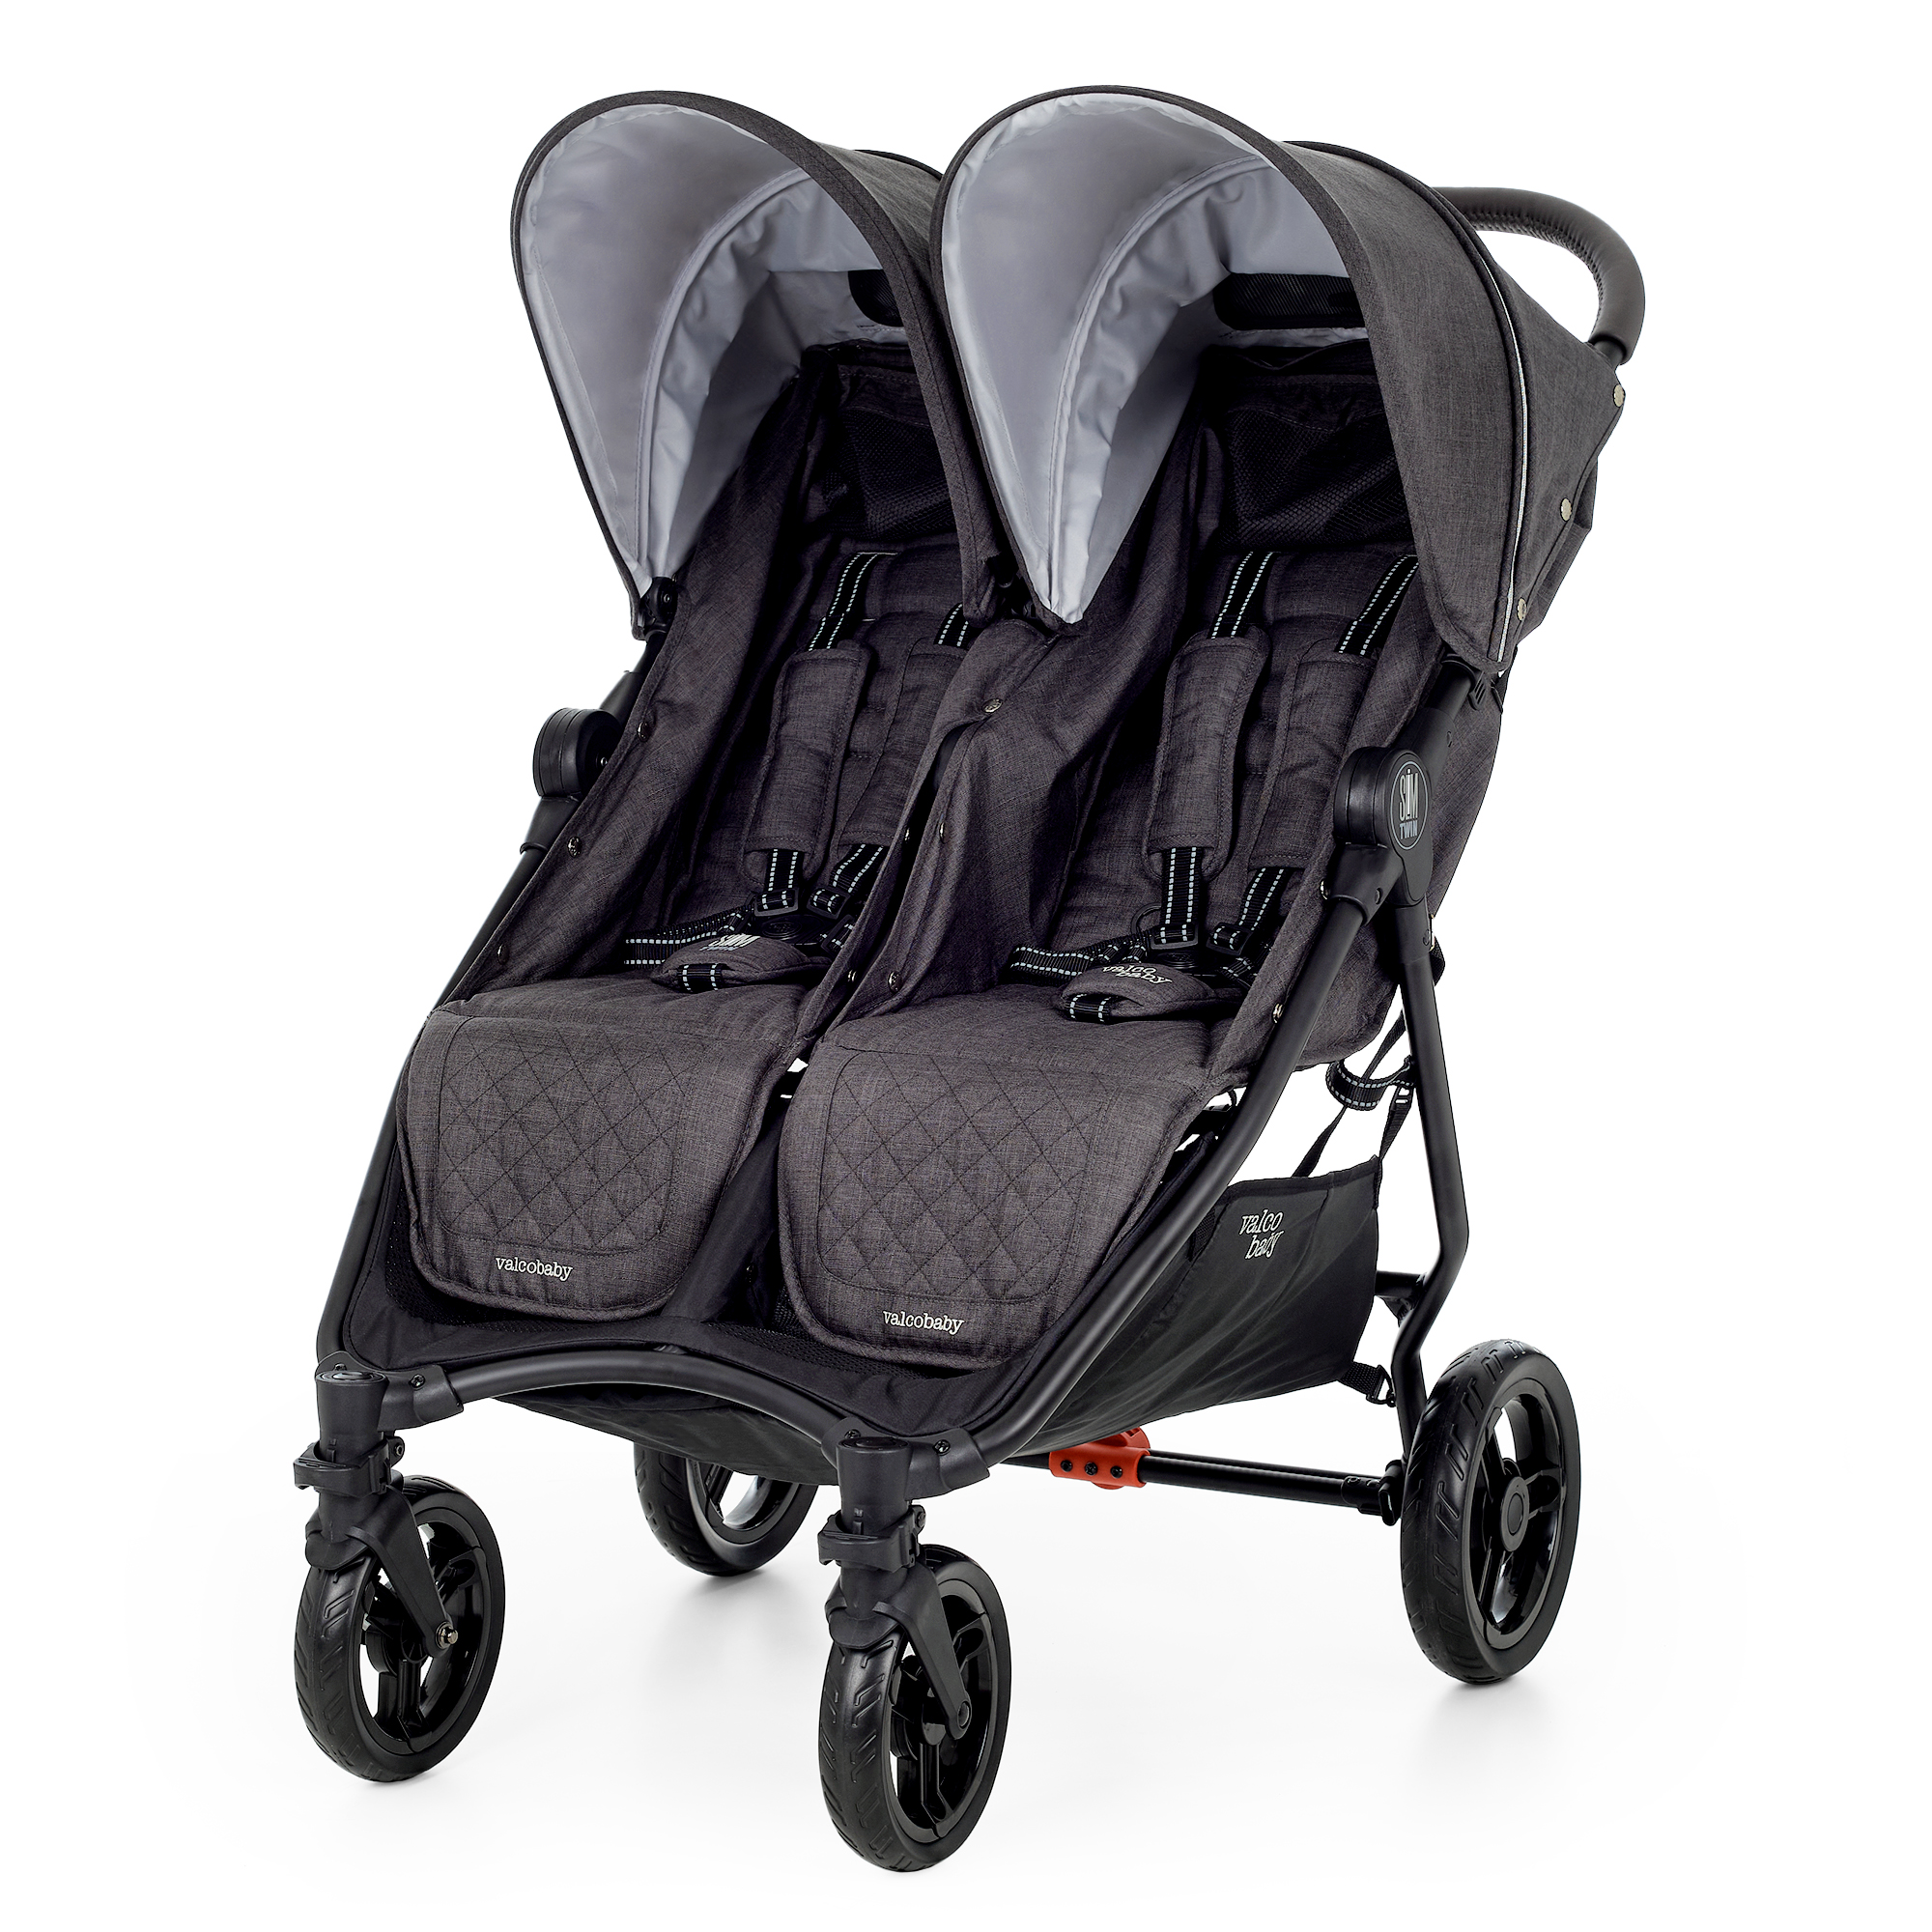 Коляска прогулочная для двойни Valco baby Slim Twin,цвет: Charcoal bugaboo коляска для двойни 2 в 1 donkey 5 twin